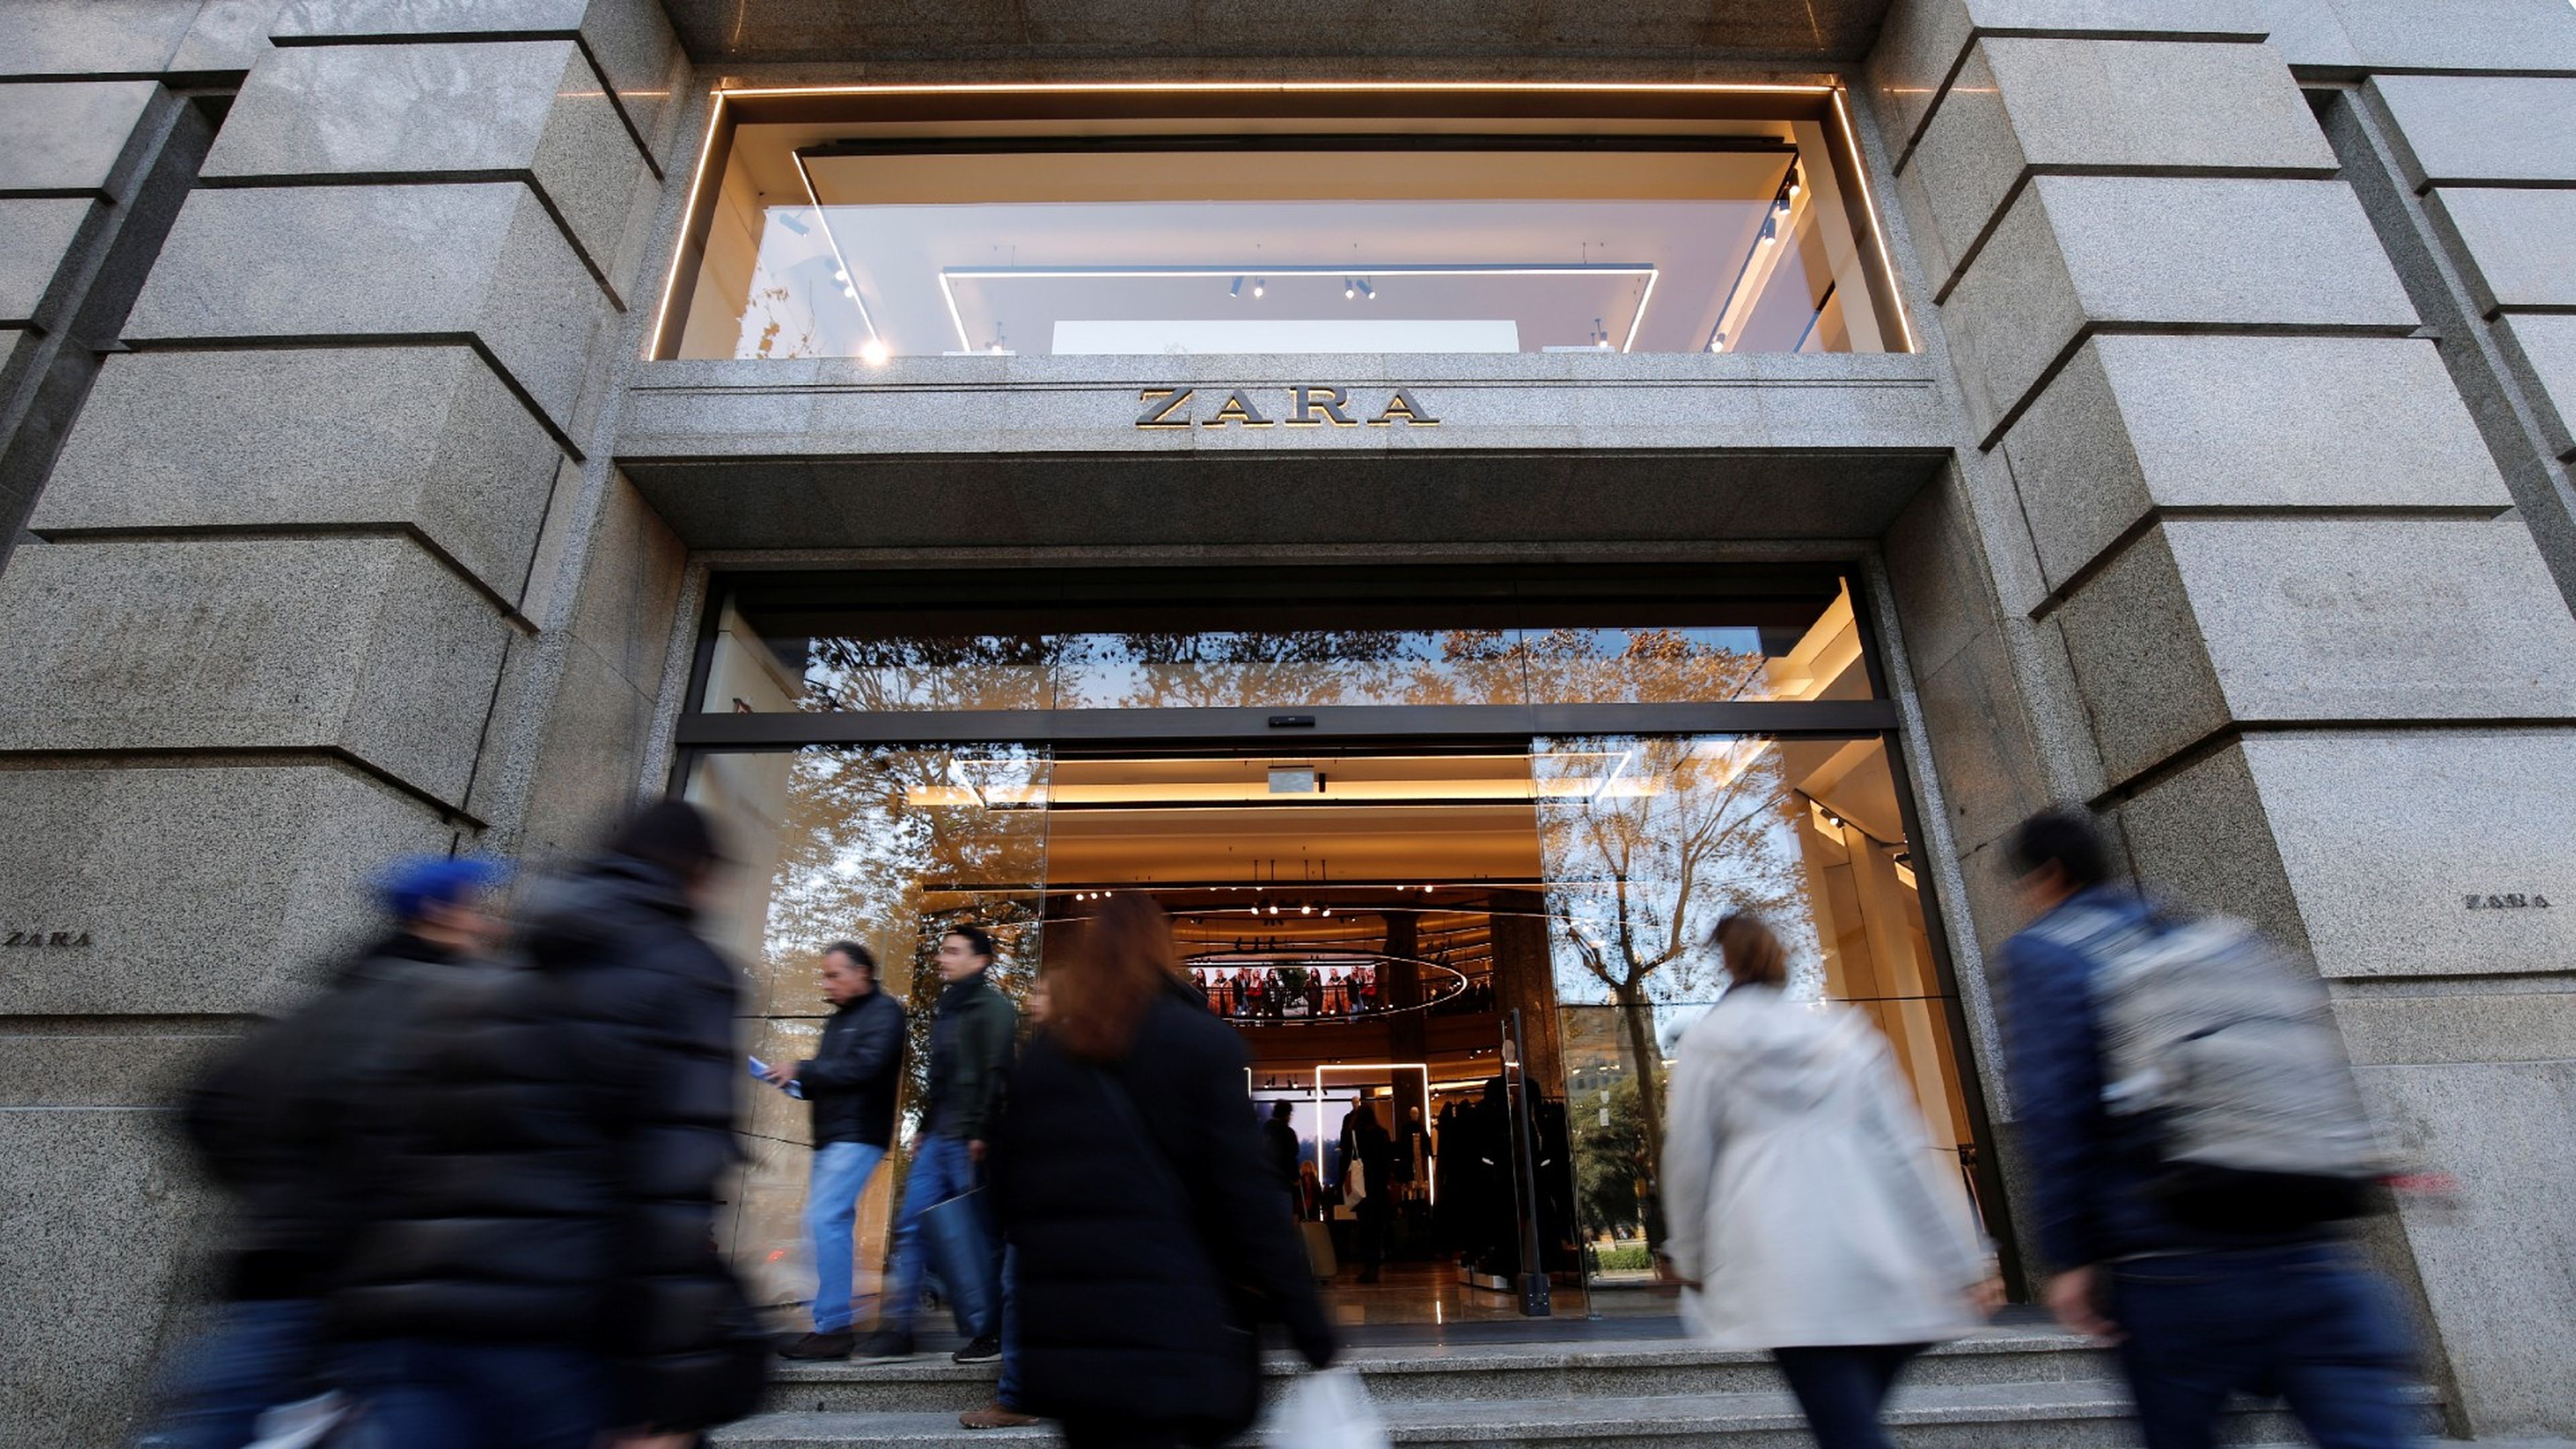 Así logró una estafar a Zara y llevarse ropa nueva gratis | Business Insider España